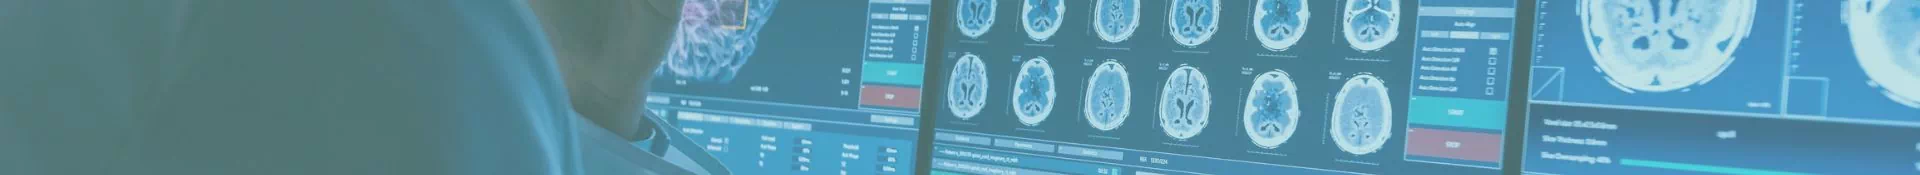 skany mózgu wyświetlane na monitorach